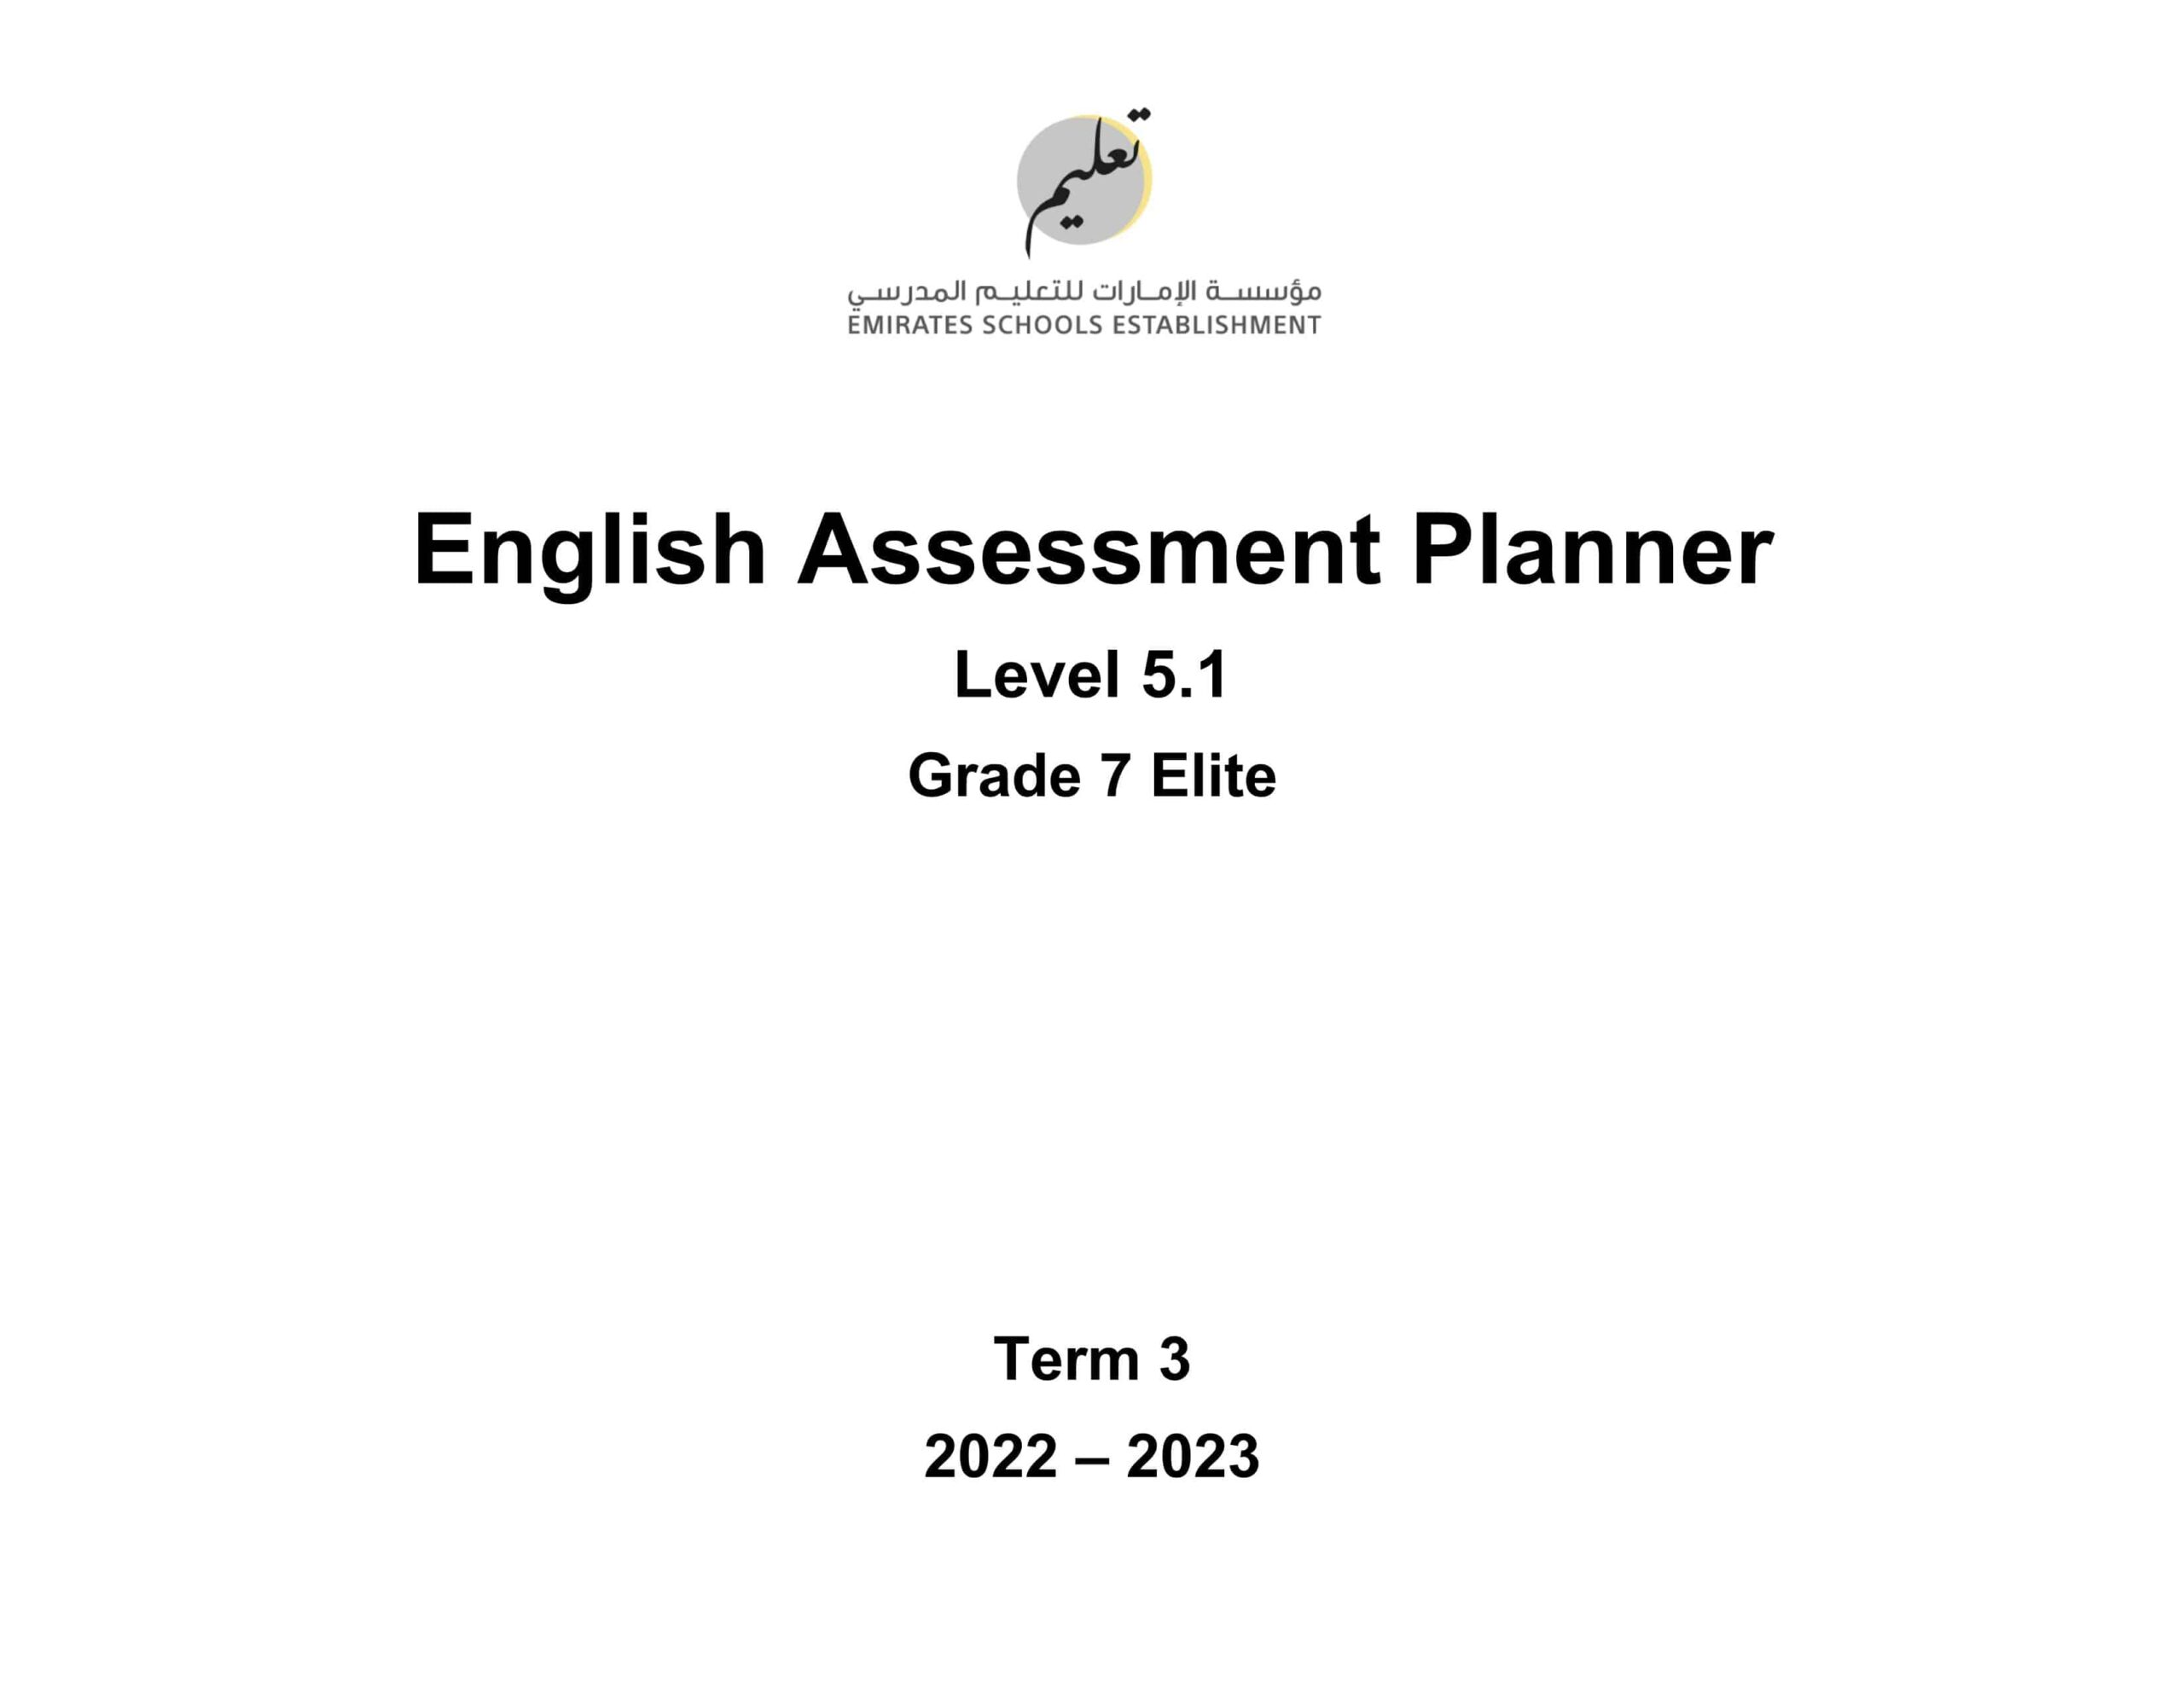 Assessment Planner اللغة الإنجليزية الصف السابع Elite الفصل الدراسي الثالث 2022-2023